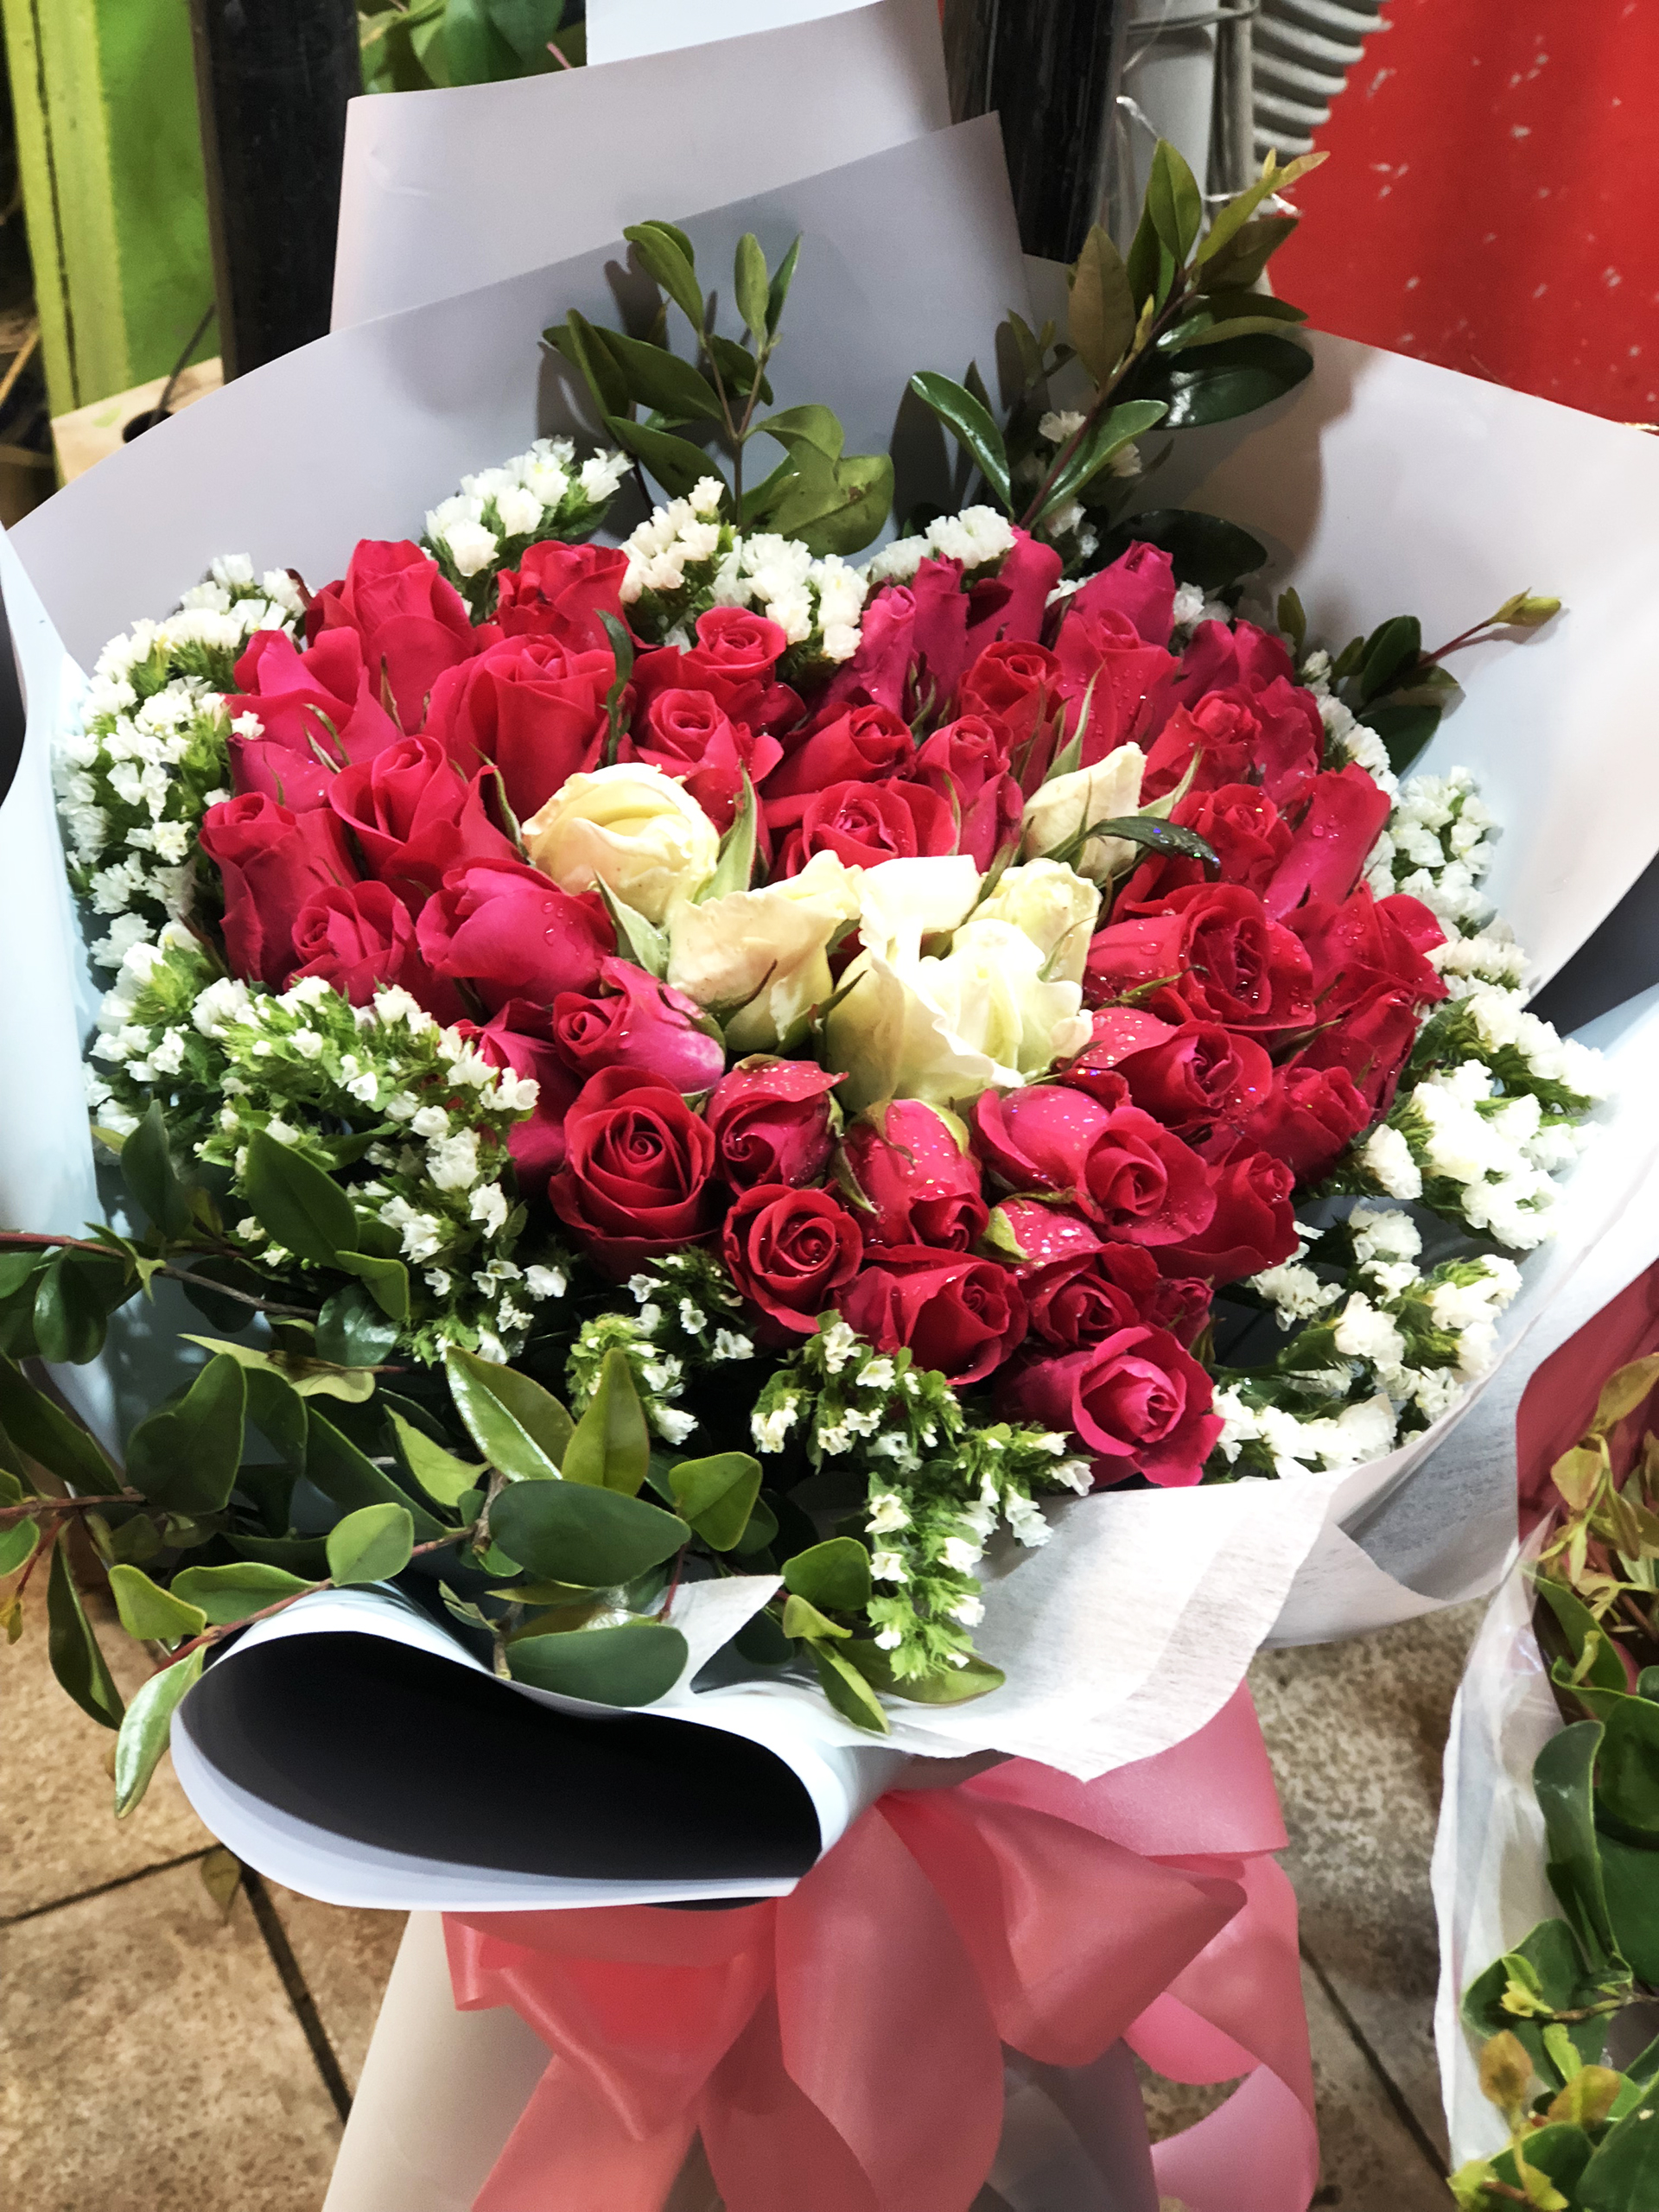 Hình ảnh hoa Valentine/hình ảnh hoa Valentine: Hãy cùng nhau tận hưởng không khí lãng mạn của ngày Valentine với những hình ảnh hoa đẹp và tuyệt vời này. Những bông hoa đầy sức sống sẽ truyền đạt thông điệp tình yêu chân thành nhất đến người yêu của bạn.